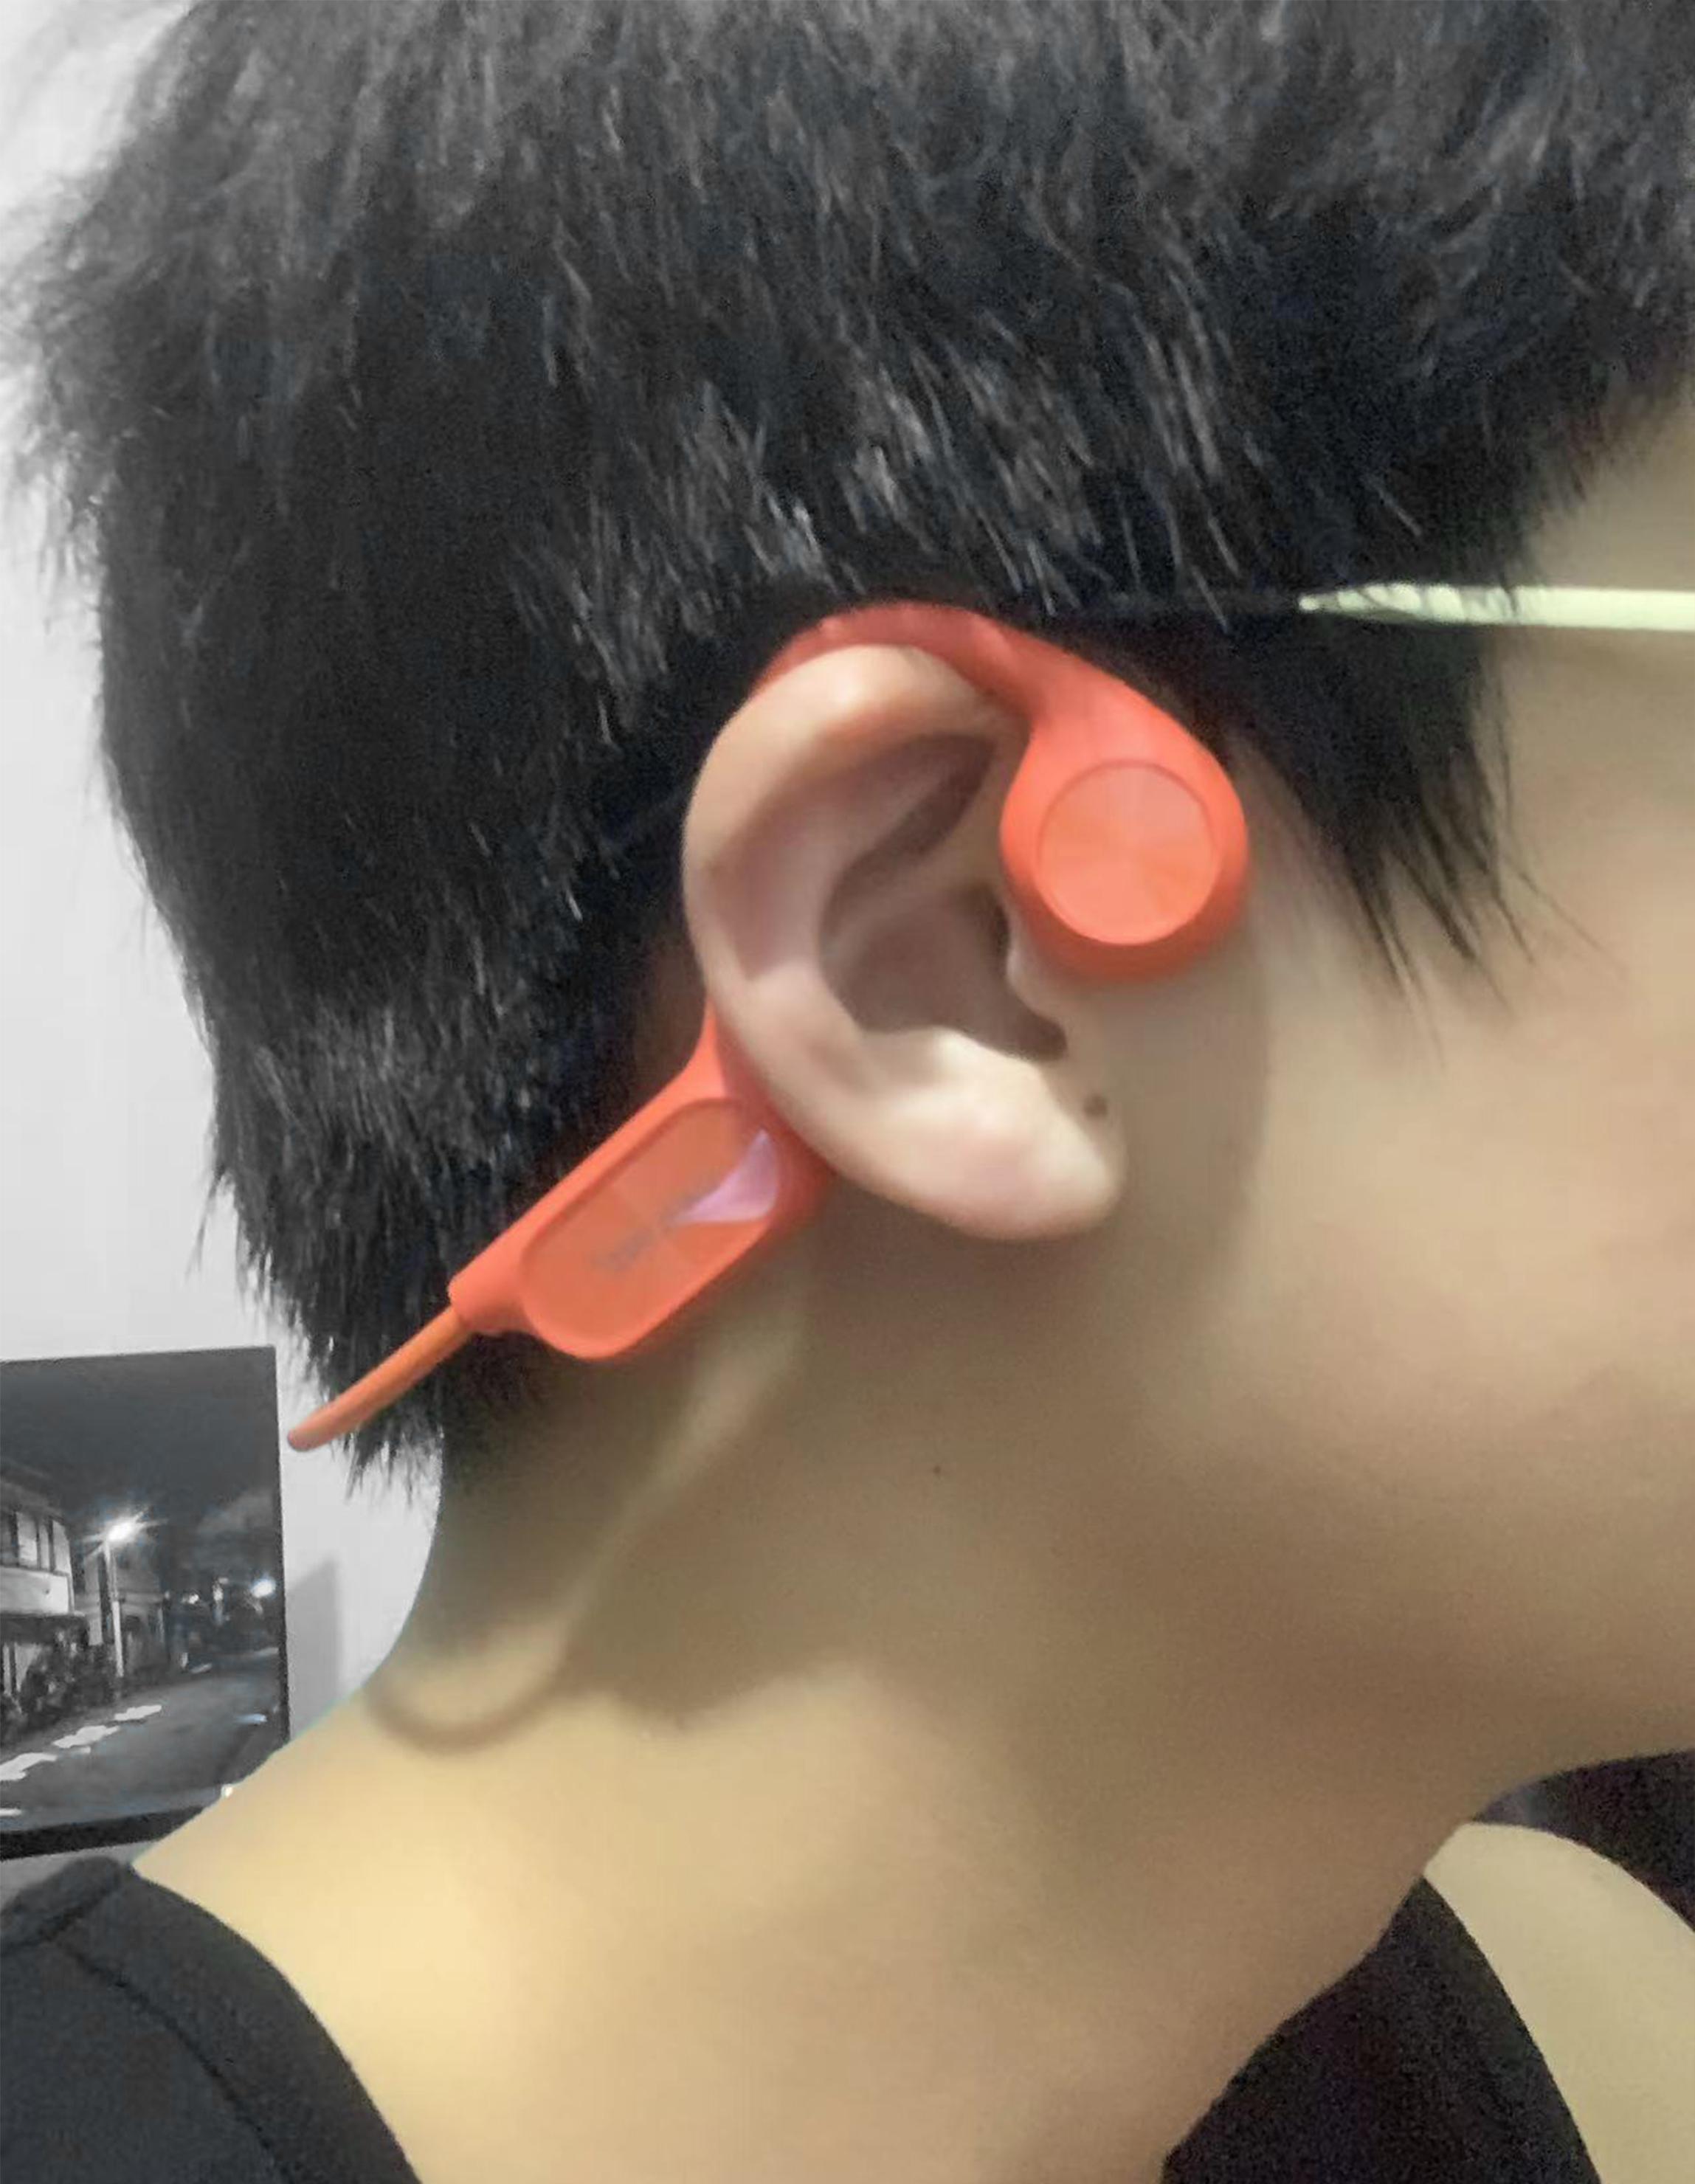 与传统的入耳式耳机不同,骨传导耳机无需塞入耳道,因此在长时间佩戴时